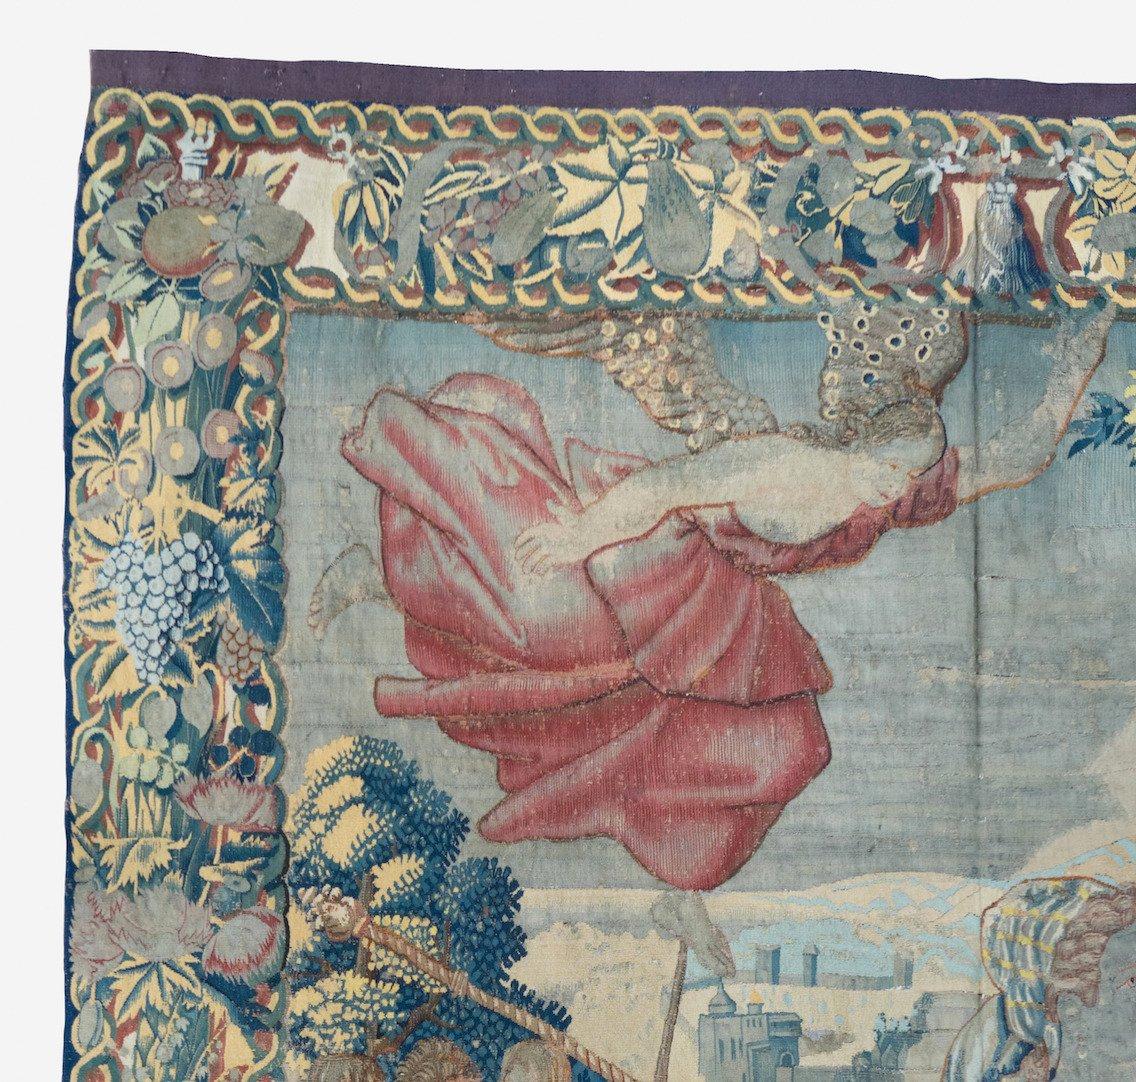 Wandteppiche waren in den Schlössern und Kirchen des Spätmittelalters und der Renaissance allgegenwärtig. Auf praktischer Ebene boten sie eine Form der Isolierung und Dekoration, die leicht transportiert werden konnte. Darüber hinaus ermöglichte das